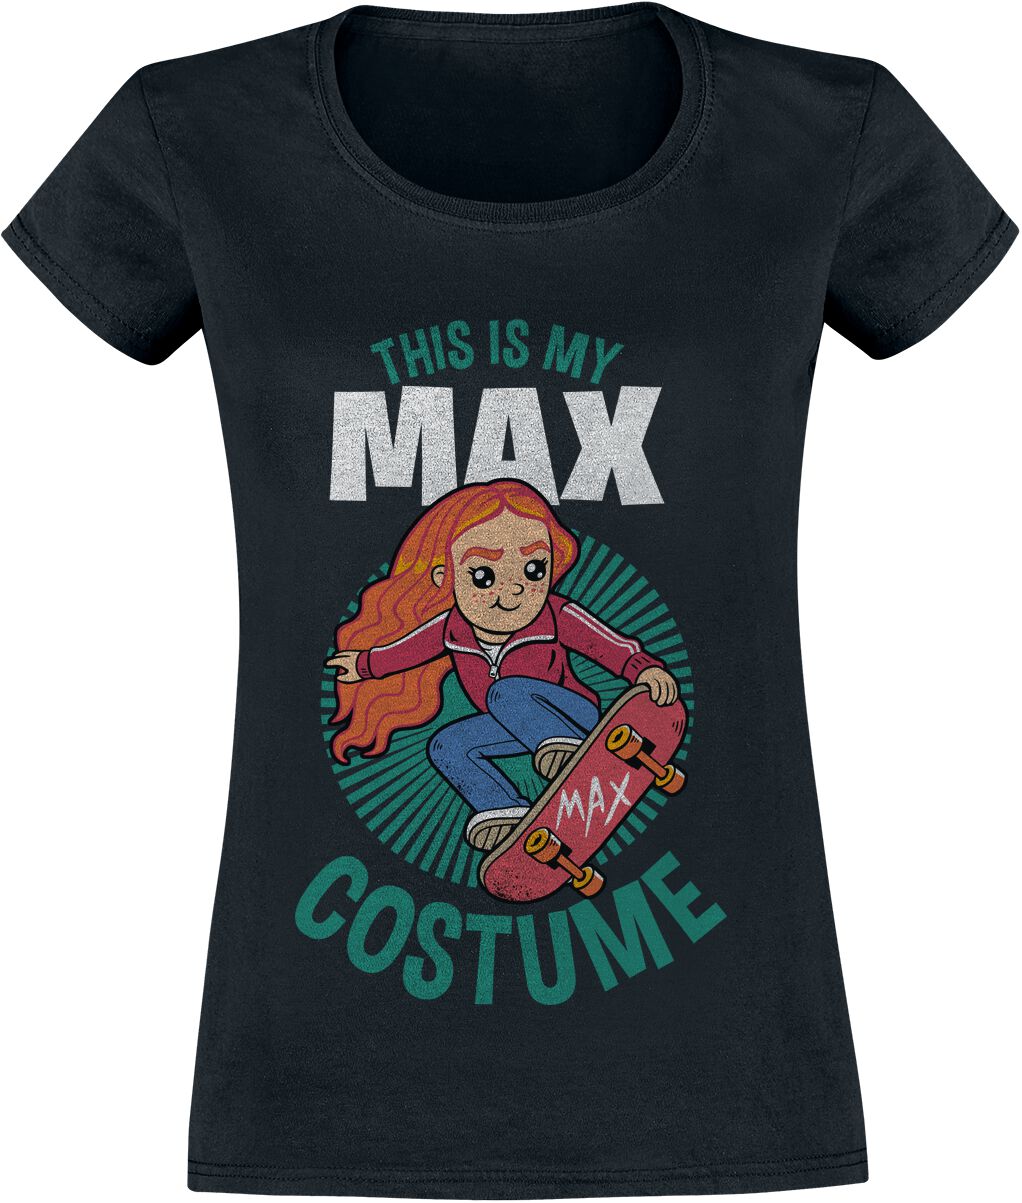 het formulier Verheugen Informeer Dit is mijn Max kostuum | Stranger Things T-shirt | Large